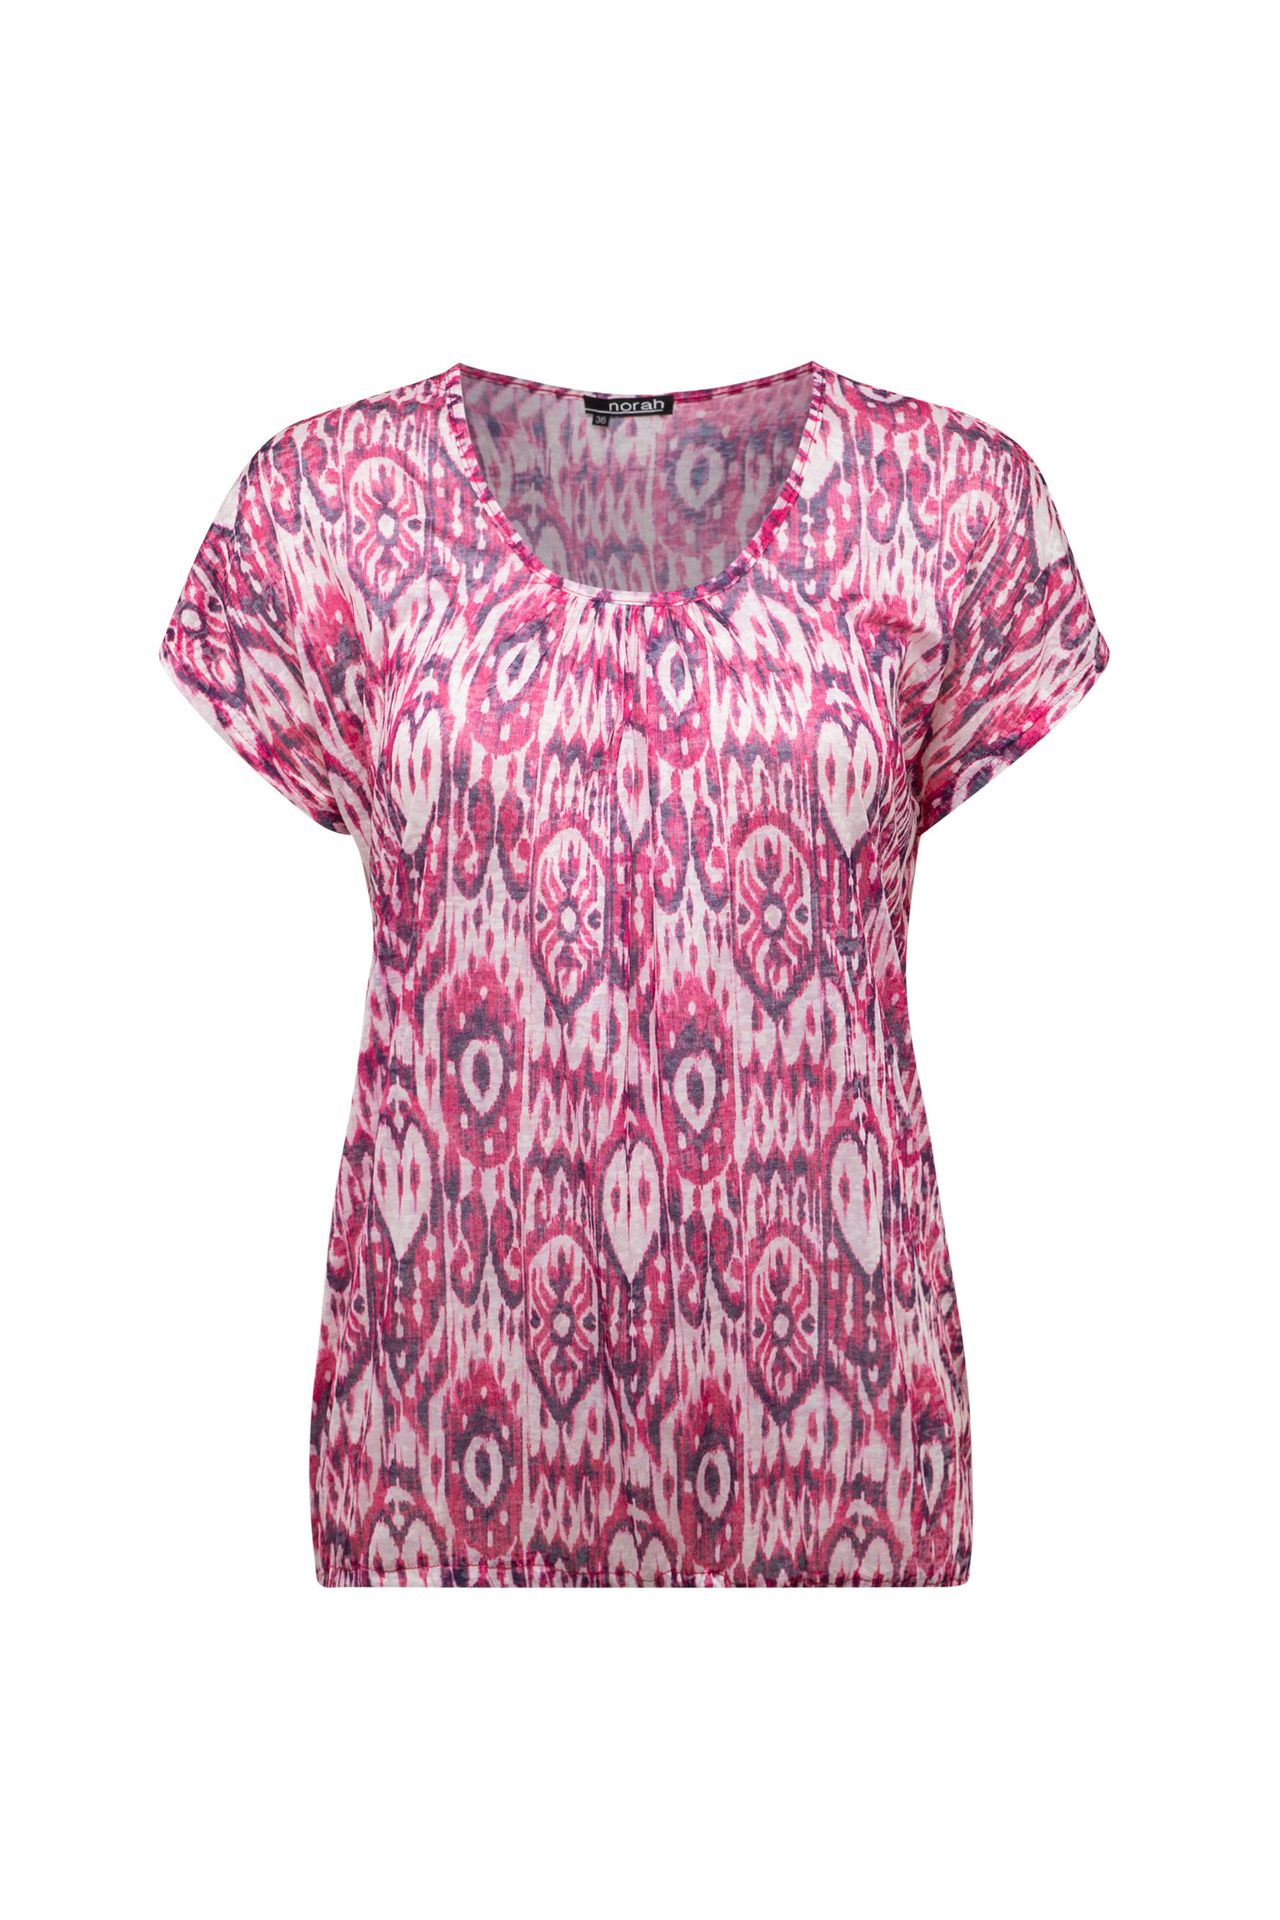 Norah Roze shirt pink/white 213801-931